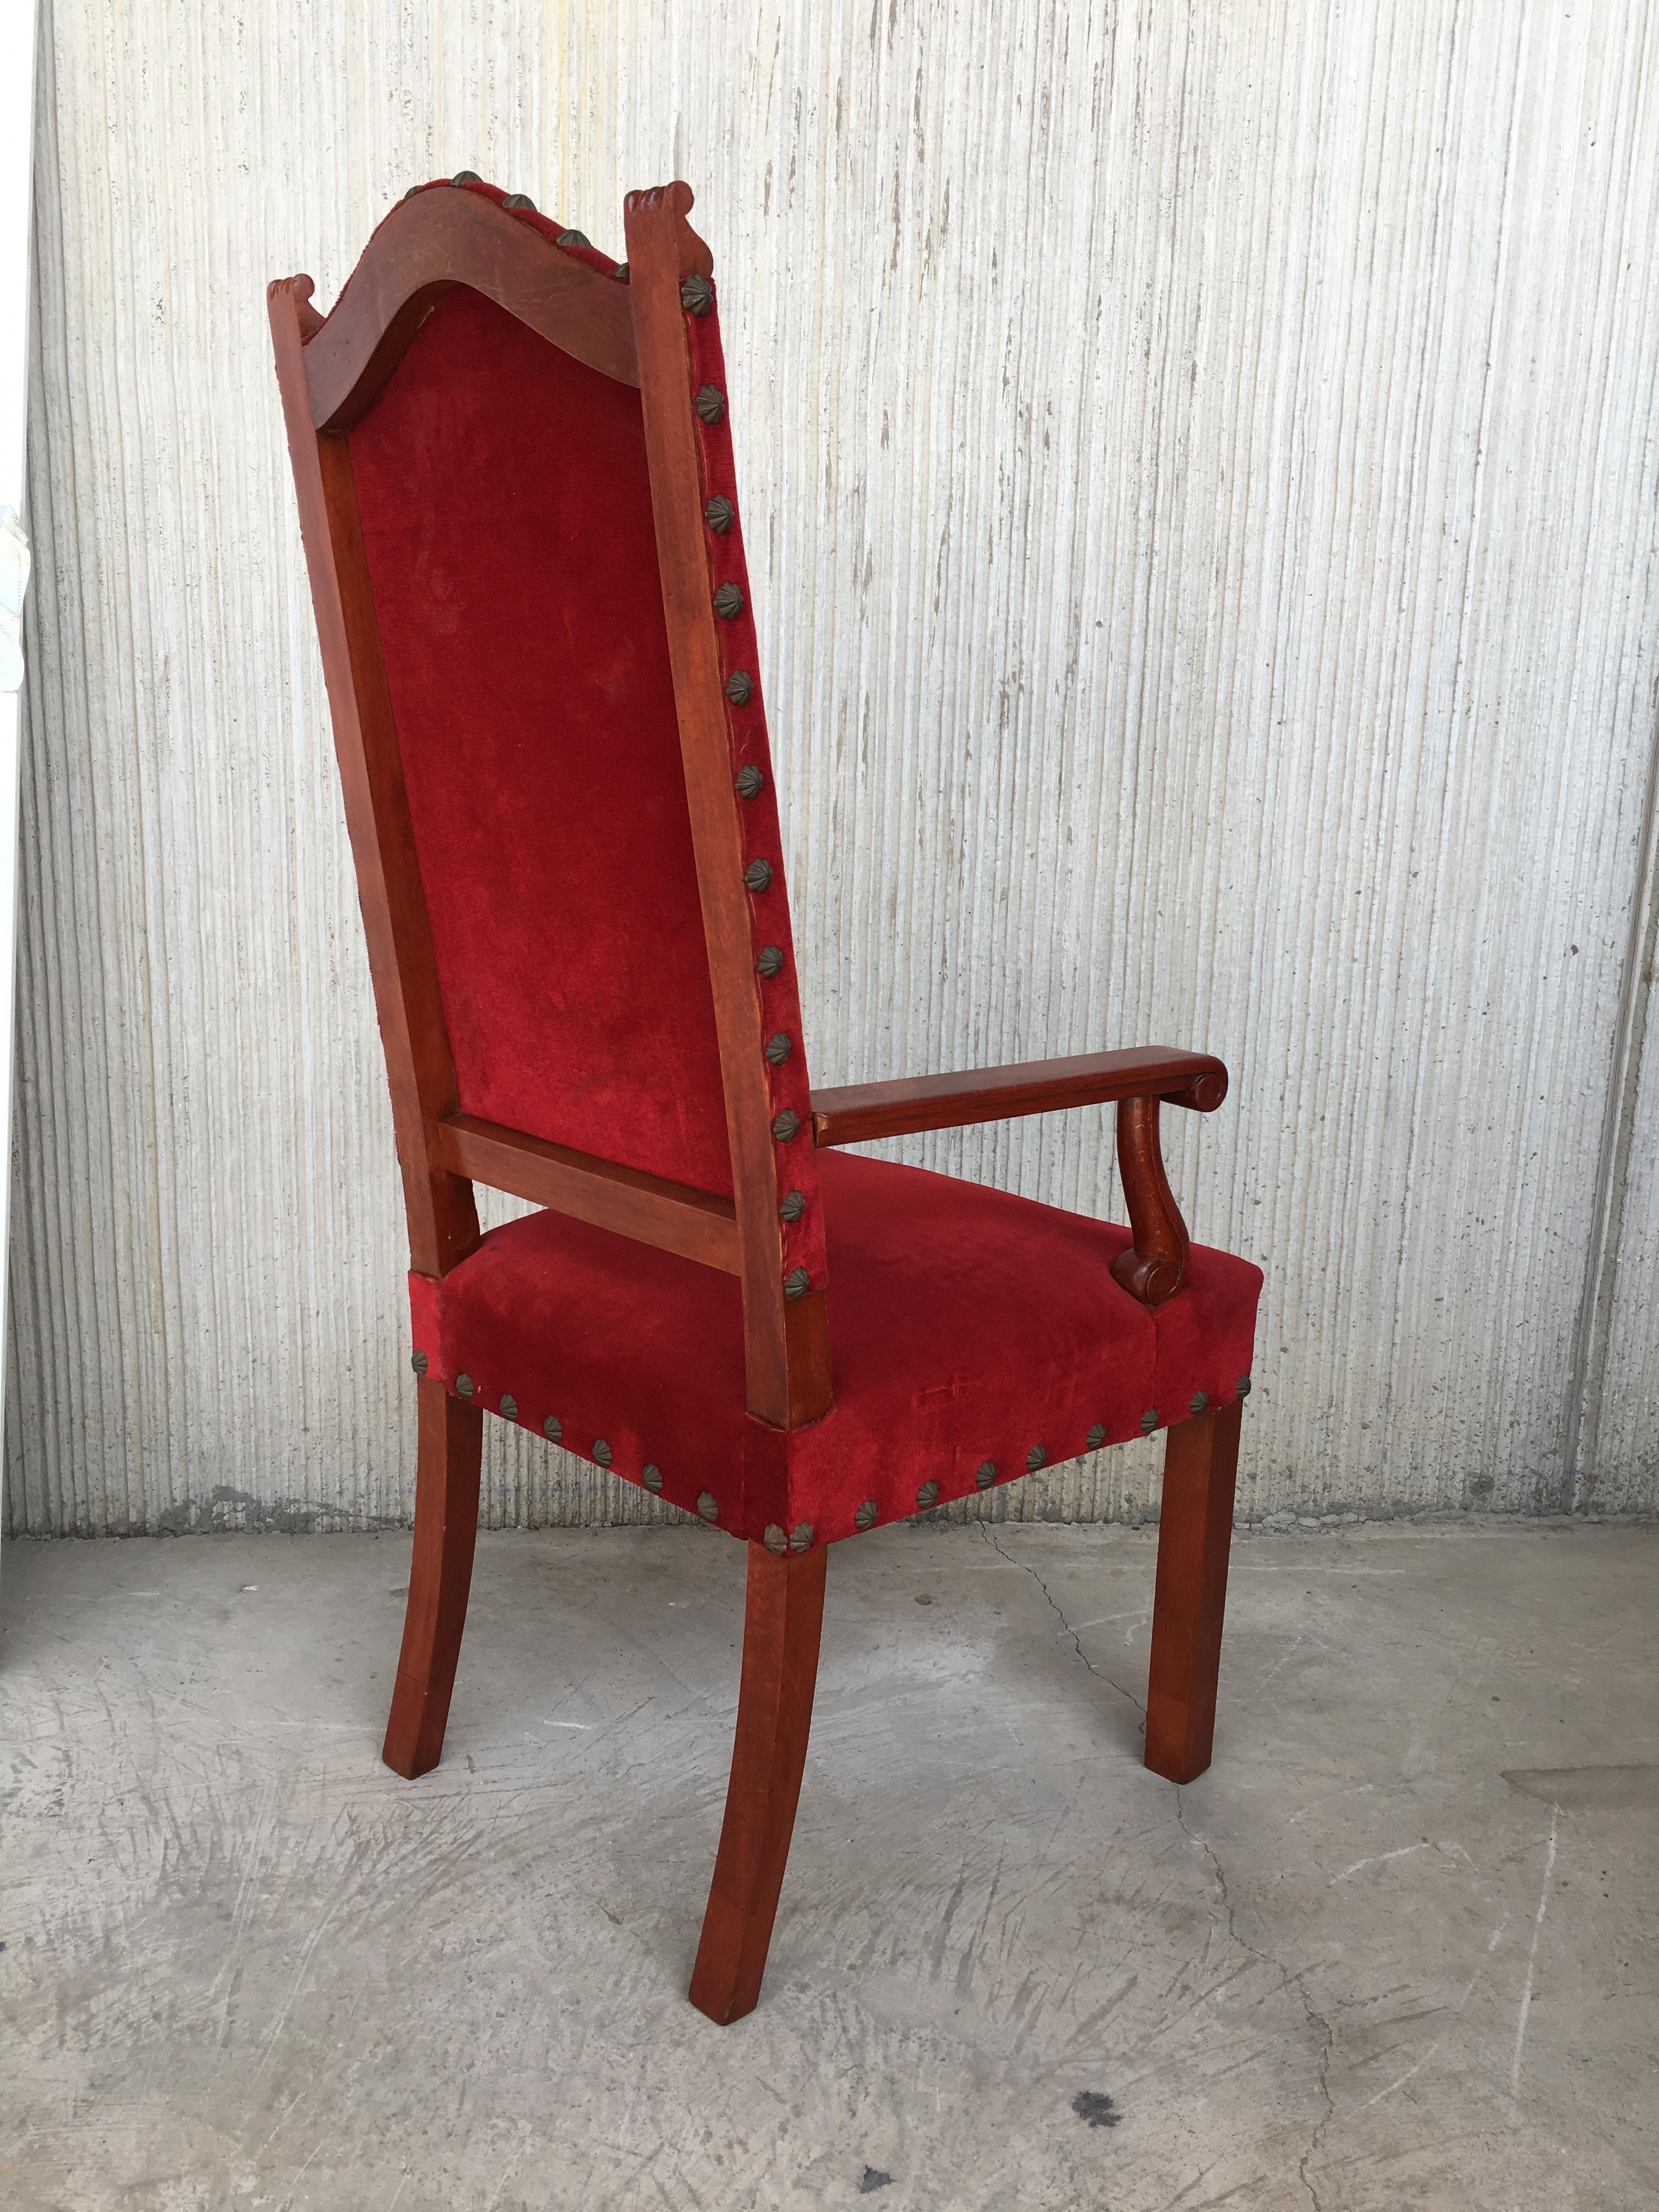 hochlehniger spanischer Revival-Sessel aus dem 19. Jahrhundert mit rotem Samtbezug.